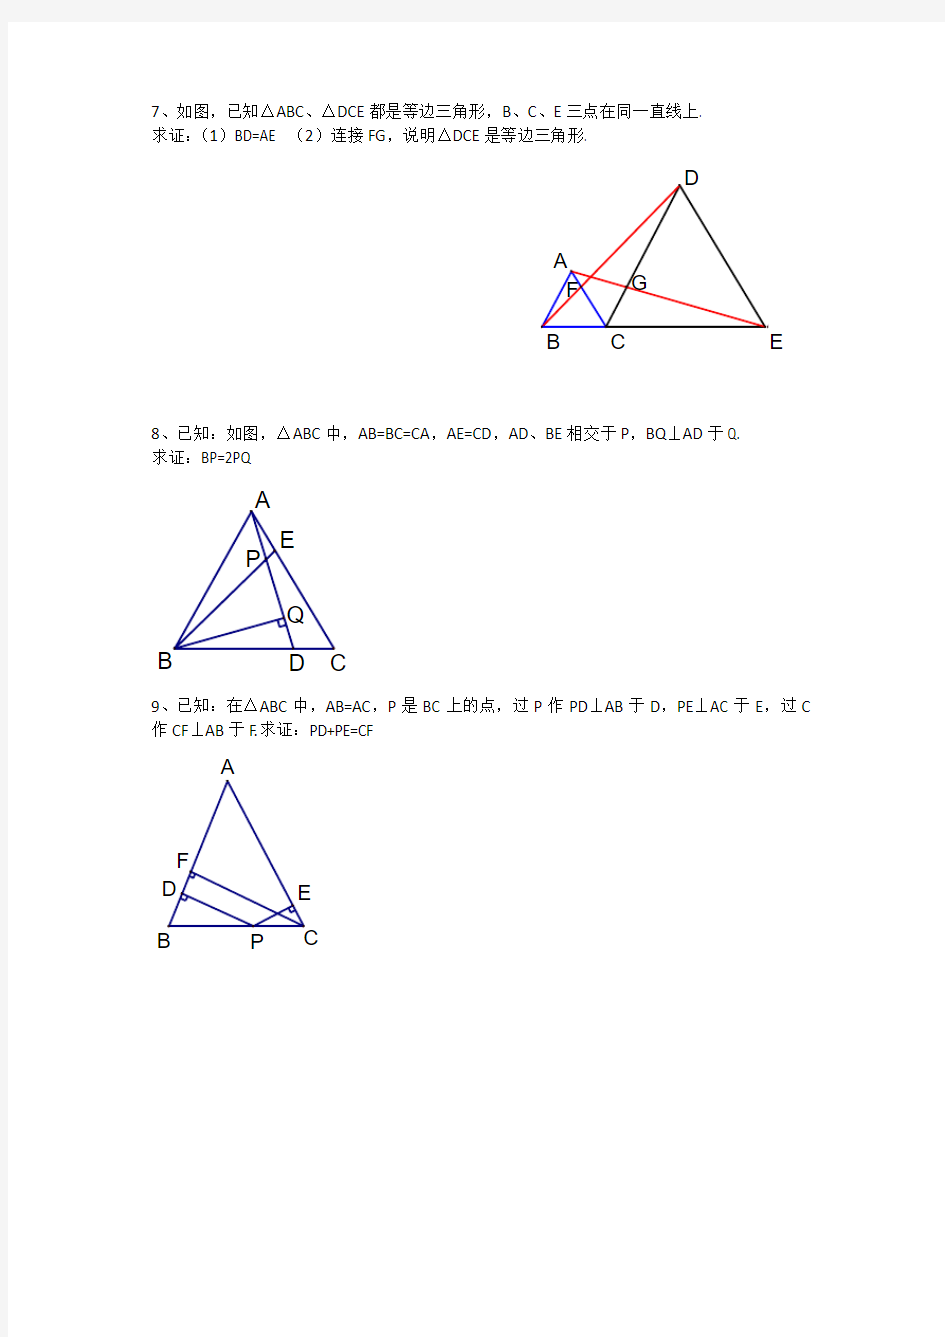 等边三角形常考经典题型